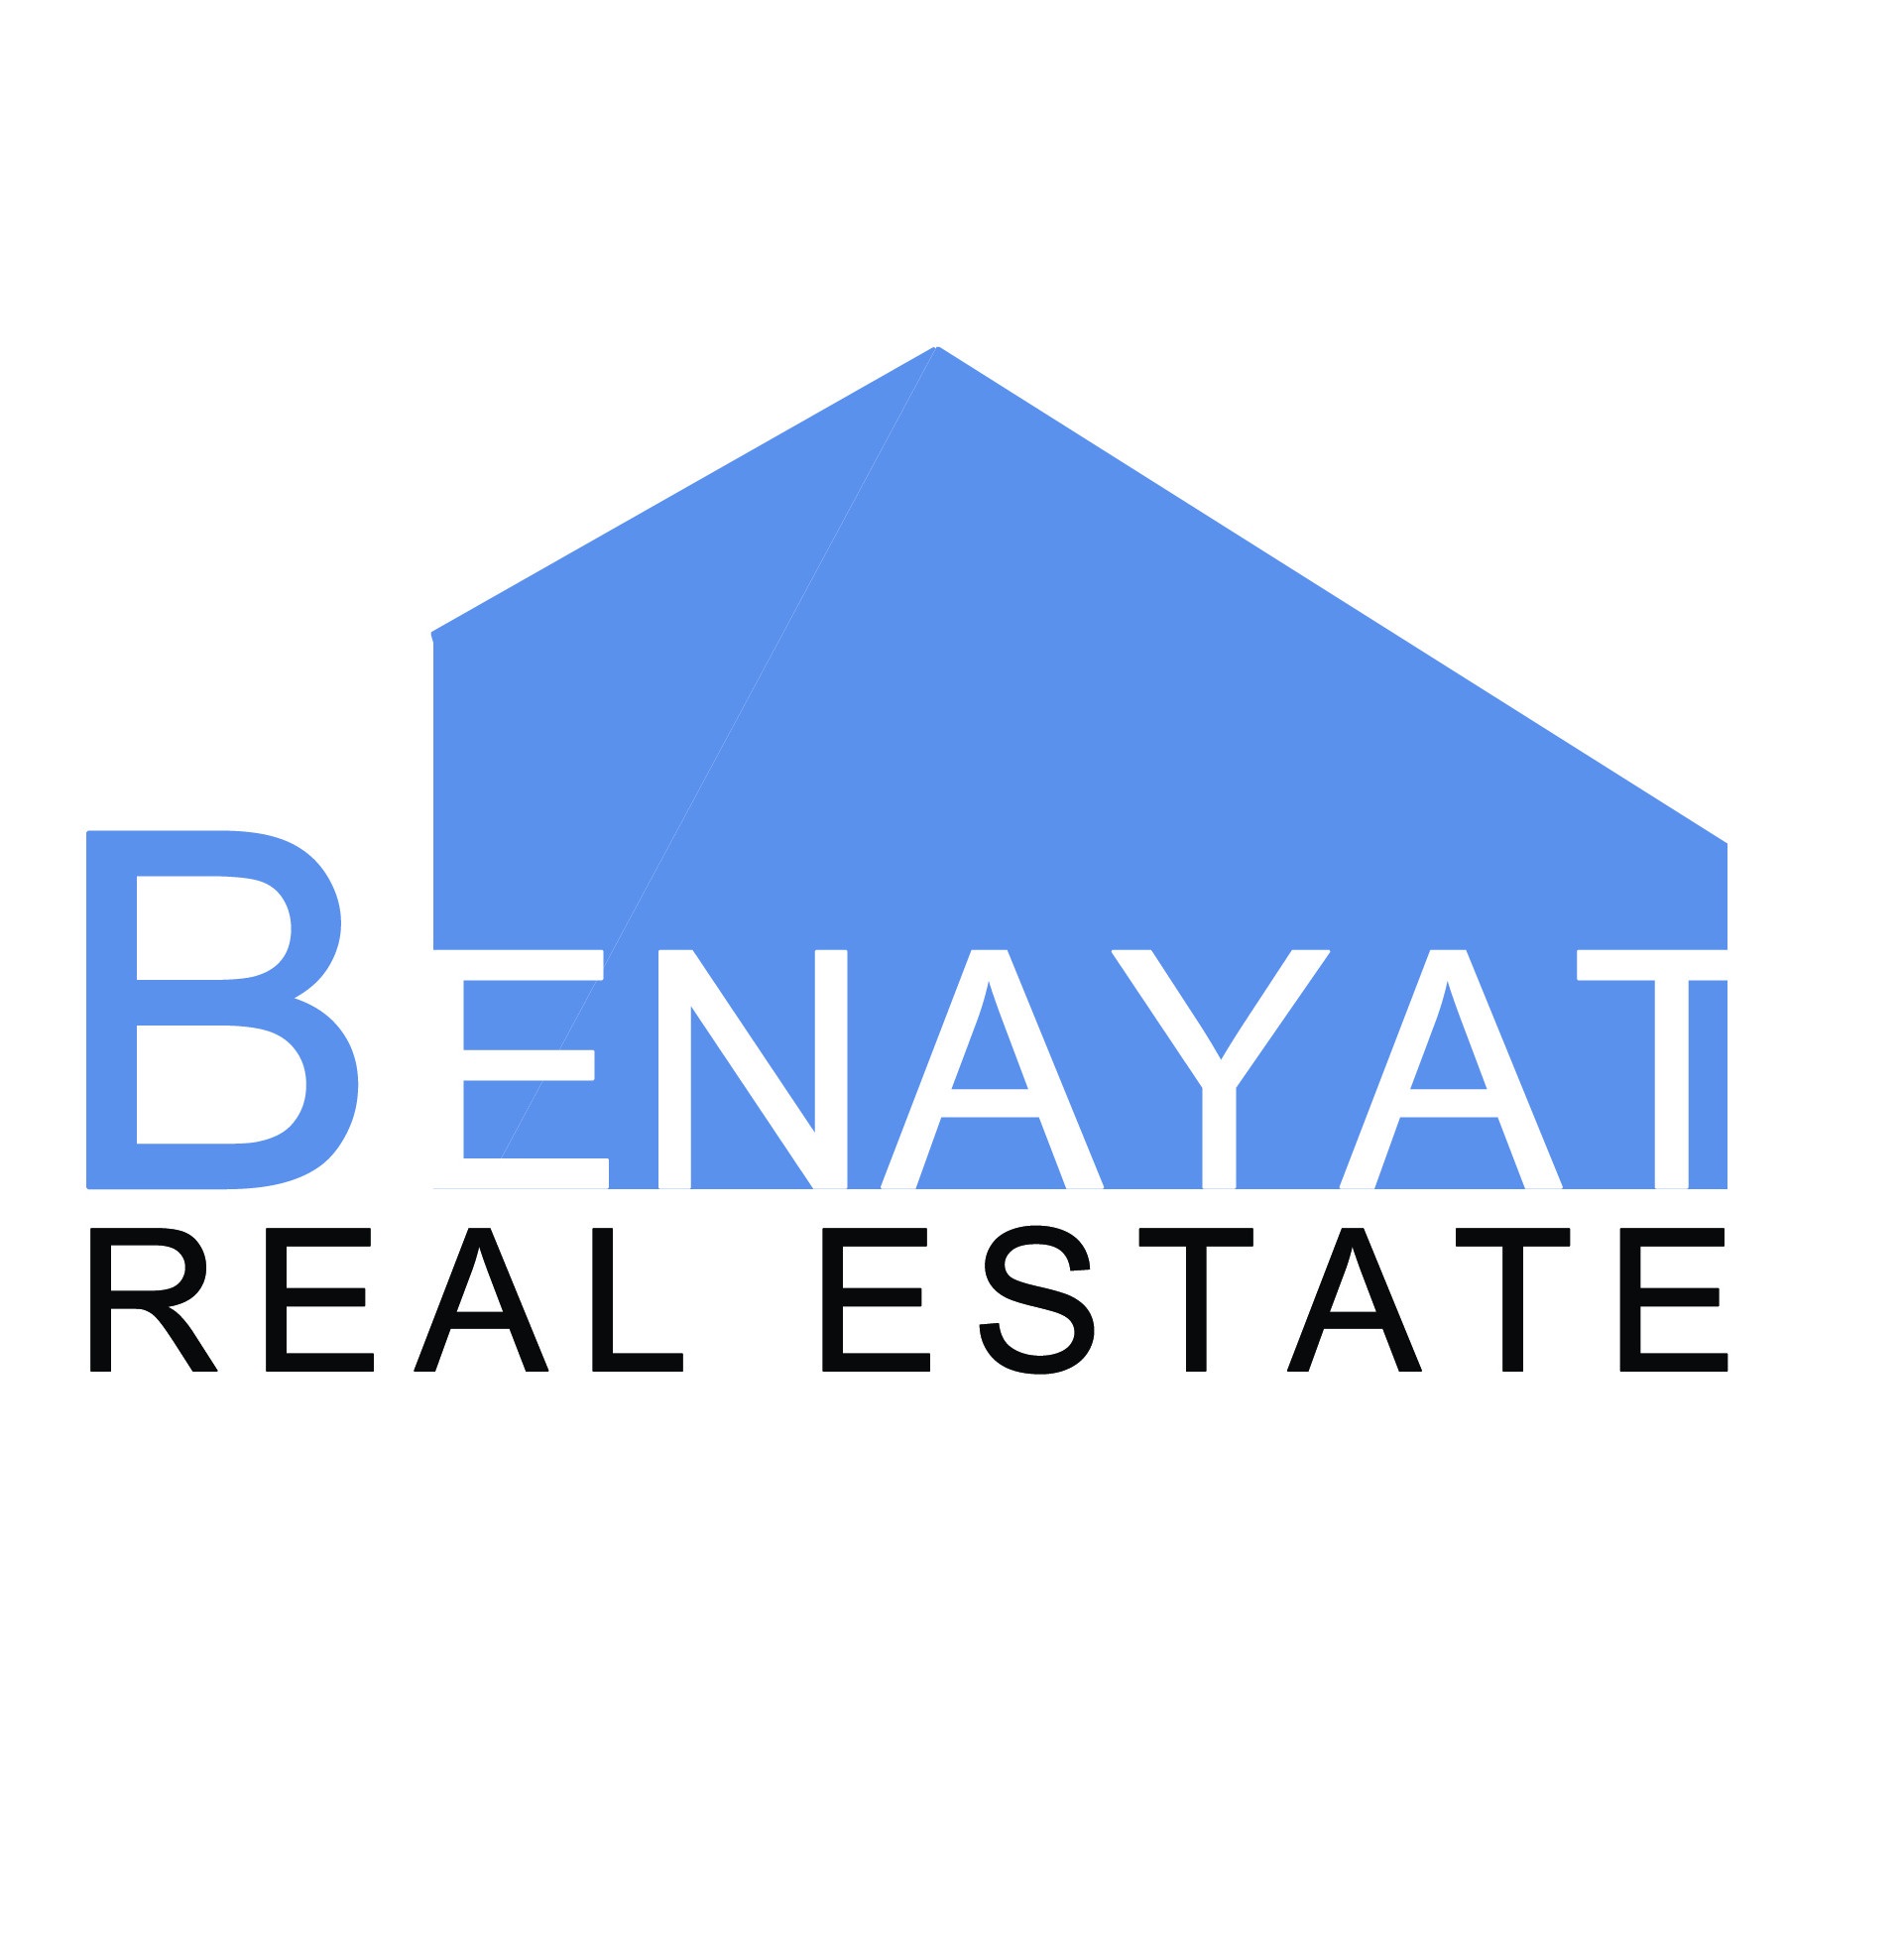 Benayat Real Estate